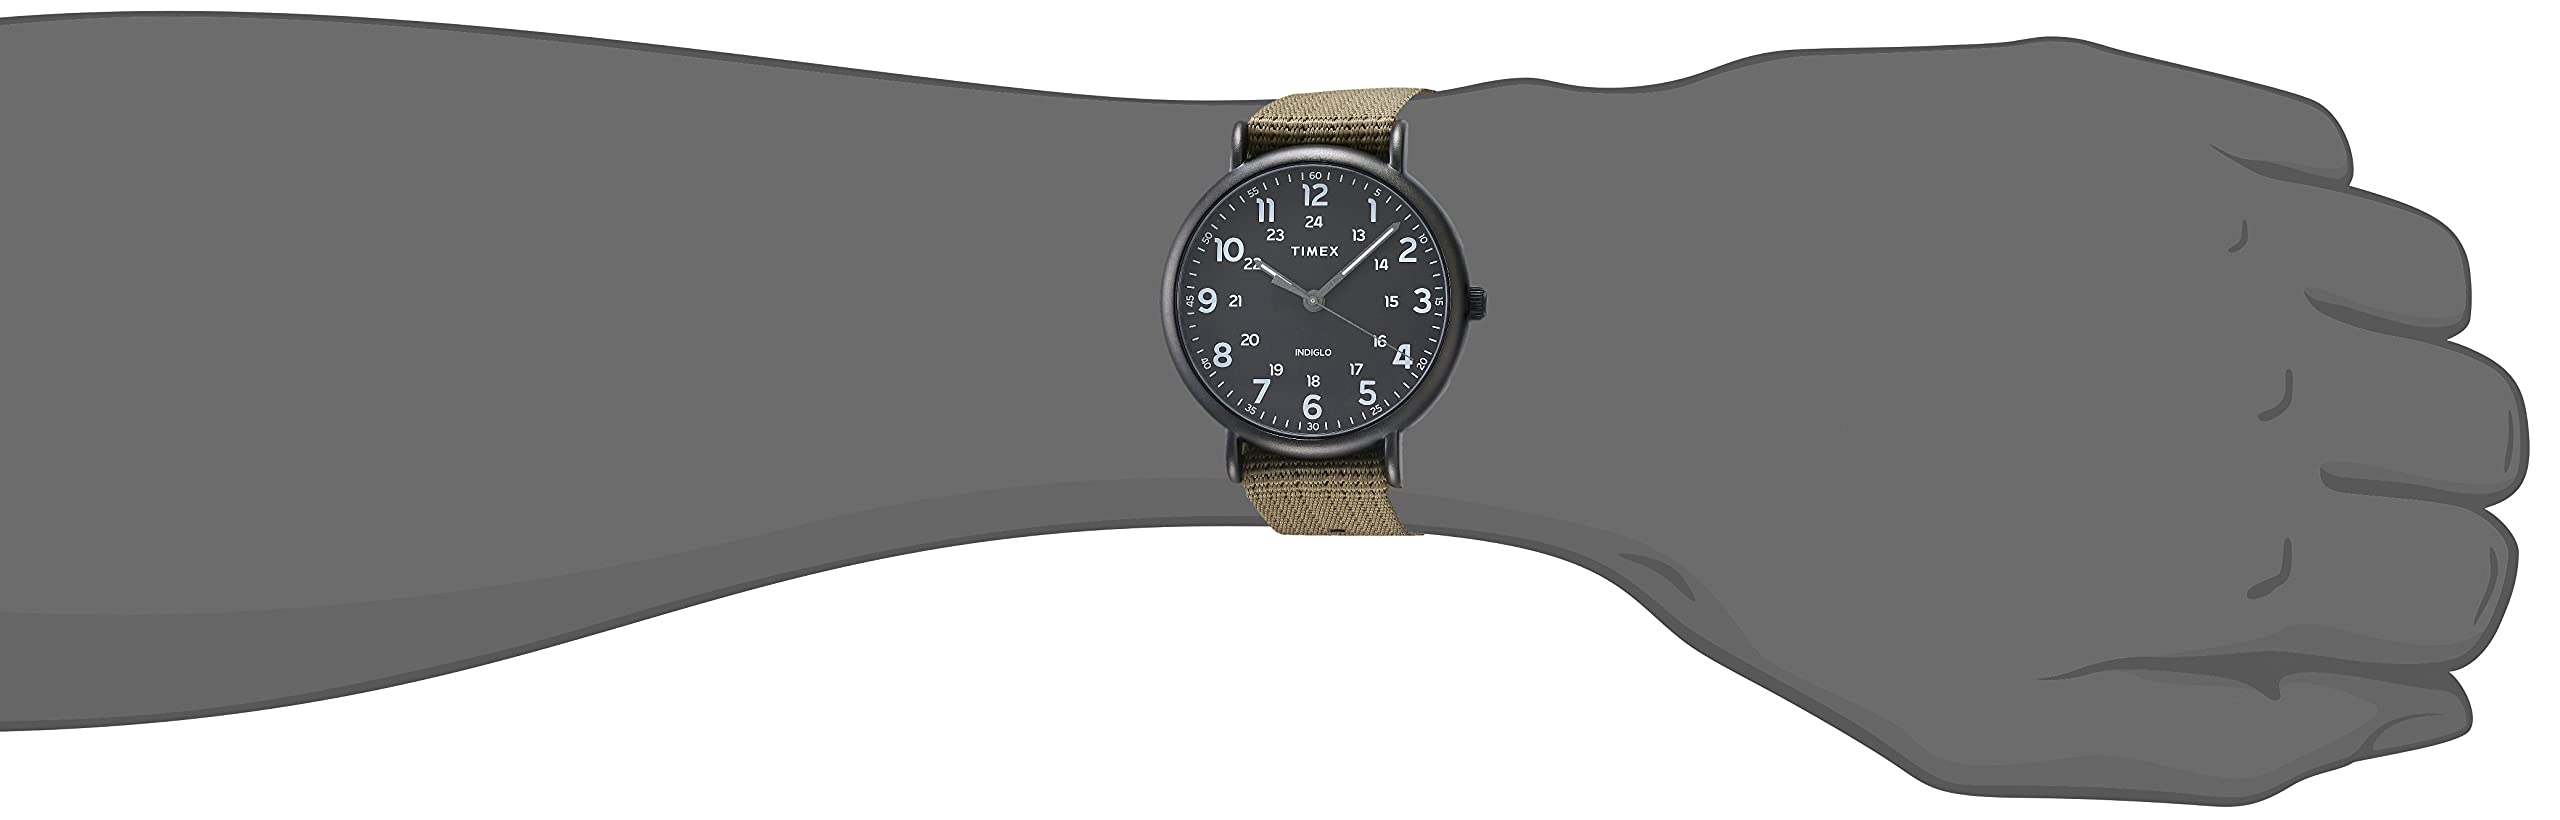 Timex Men's Weekender XL 43mm Watch